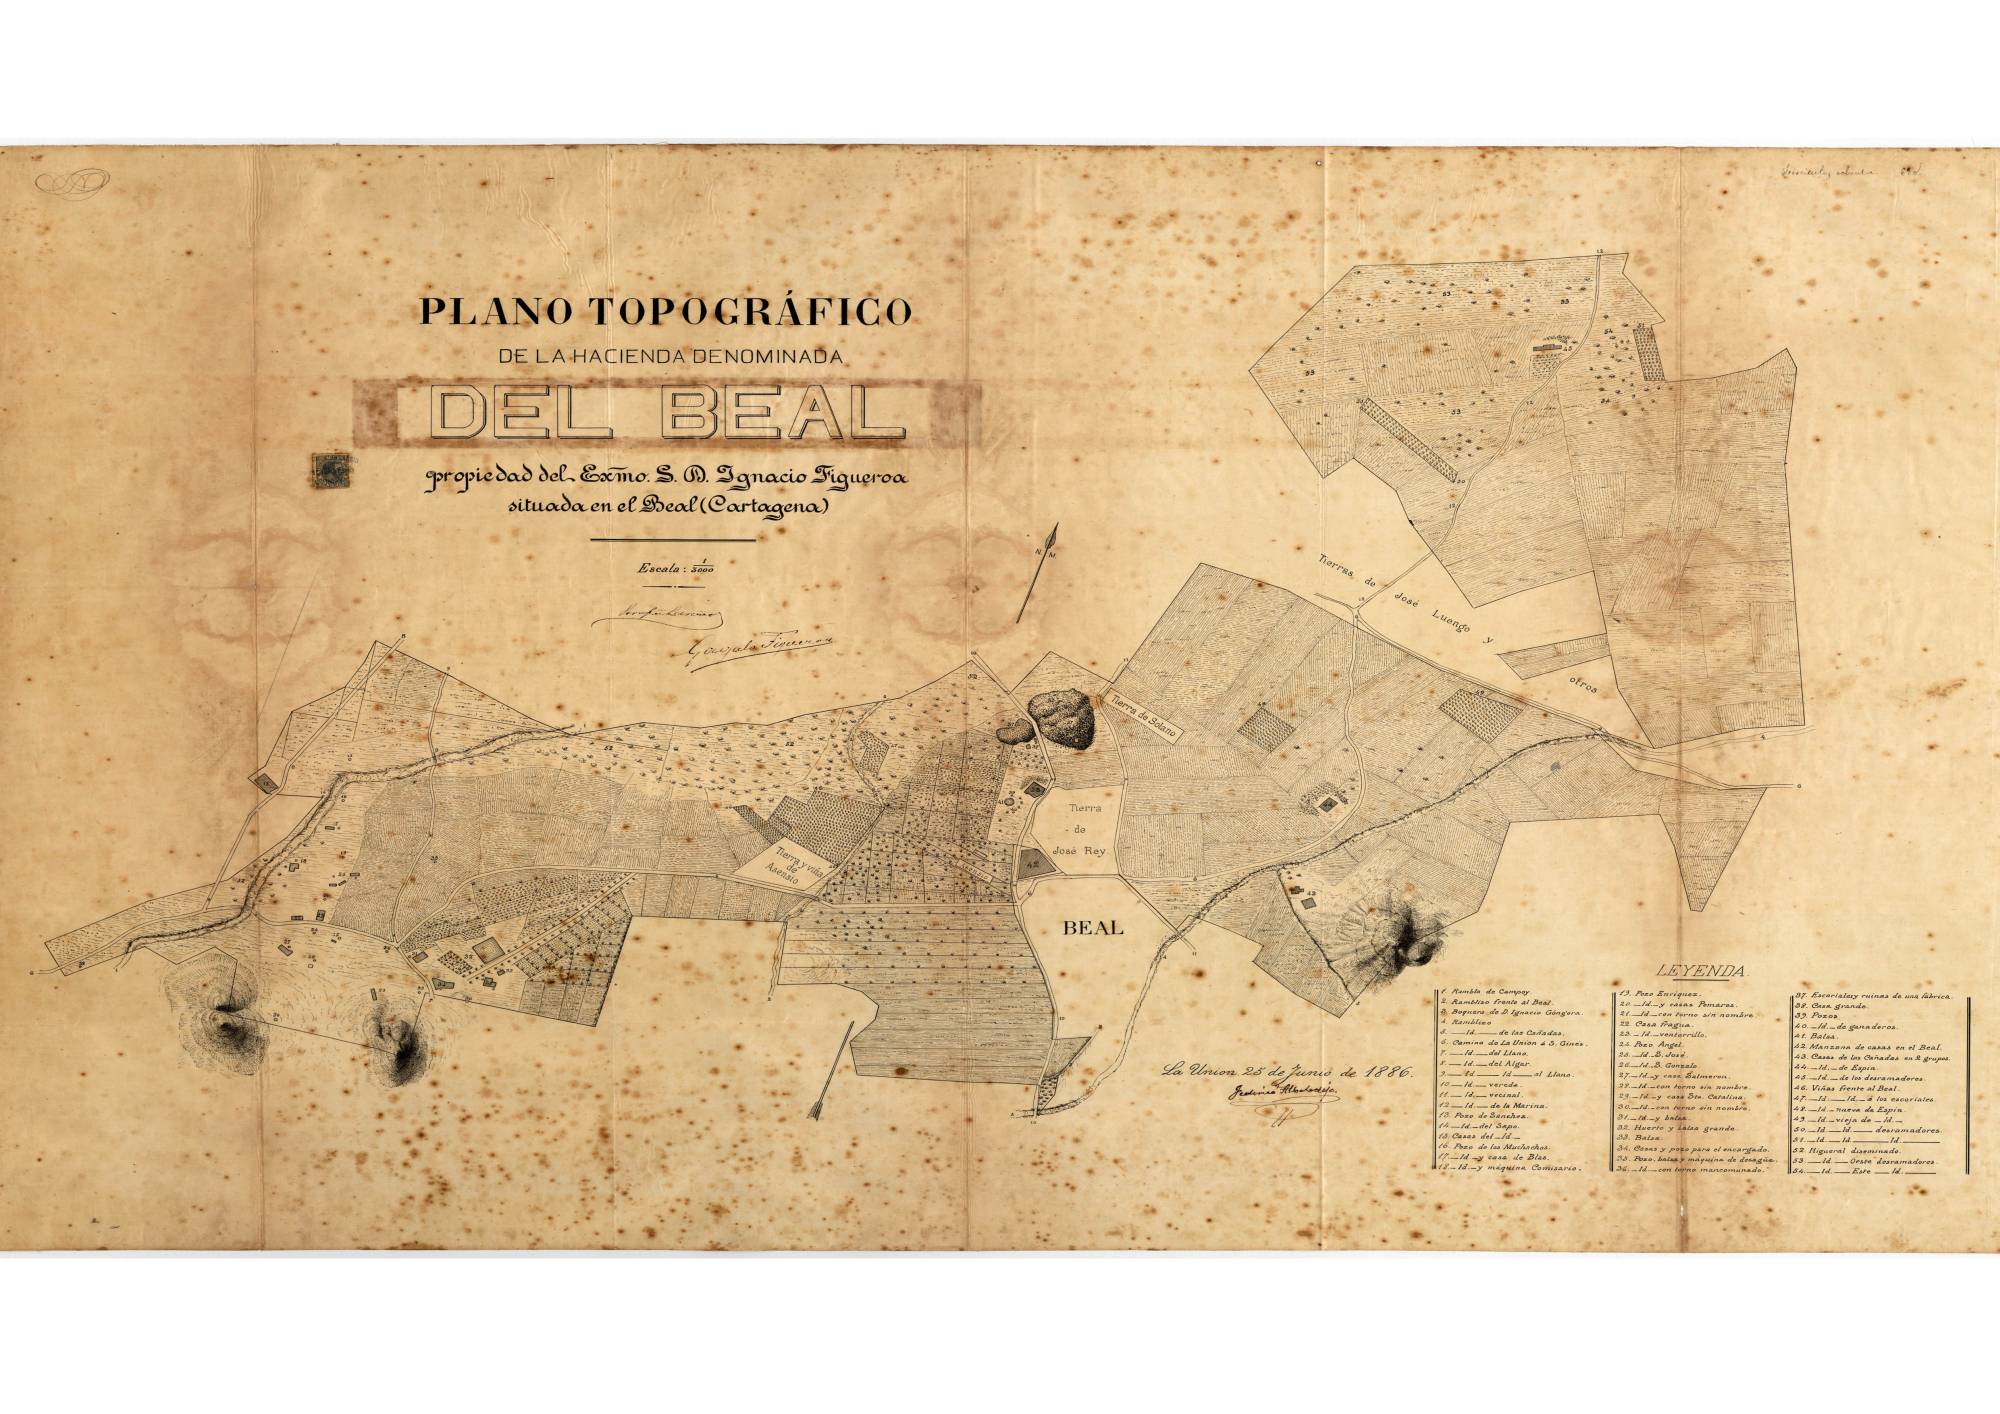 Plano topográfico de la Hacienda denominada del Beal, propiedad del Excelentísimo Señor D. Ignacio Figueroa, situada en El Beal.